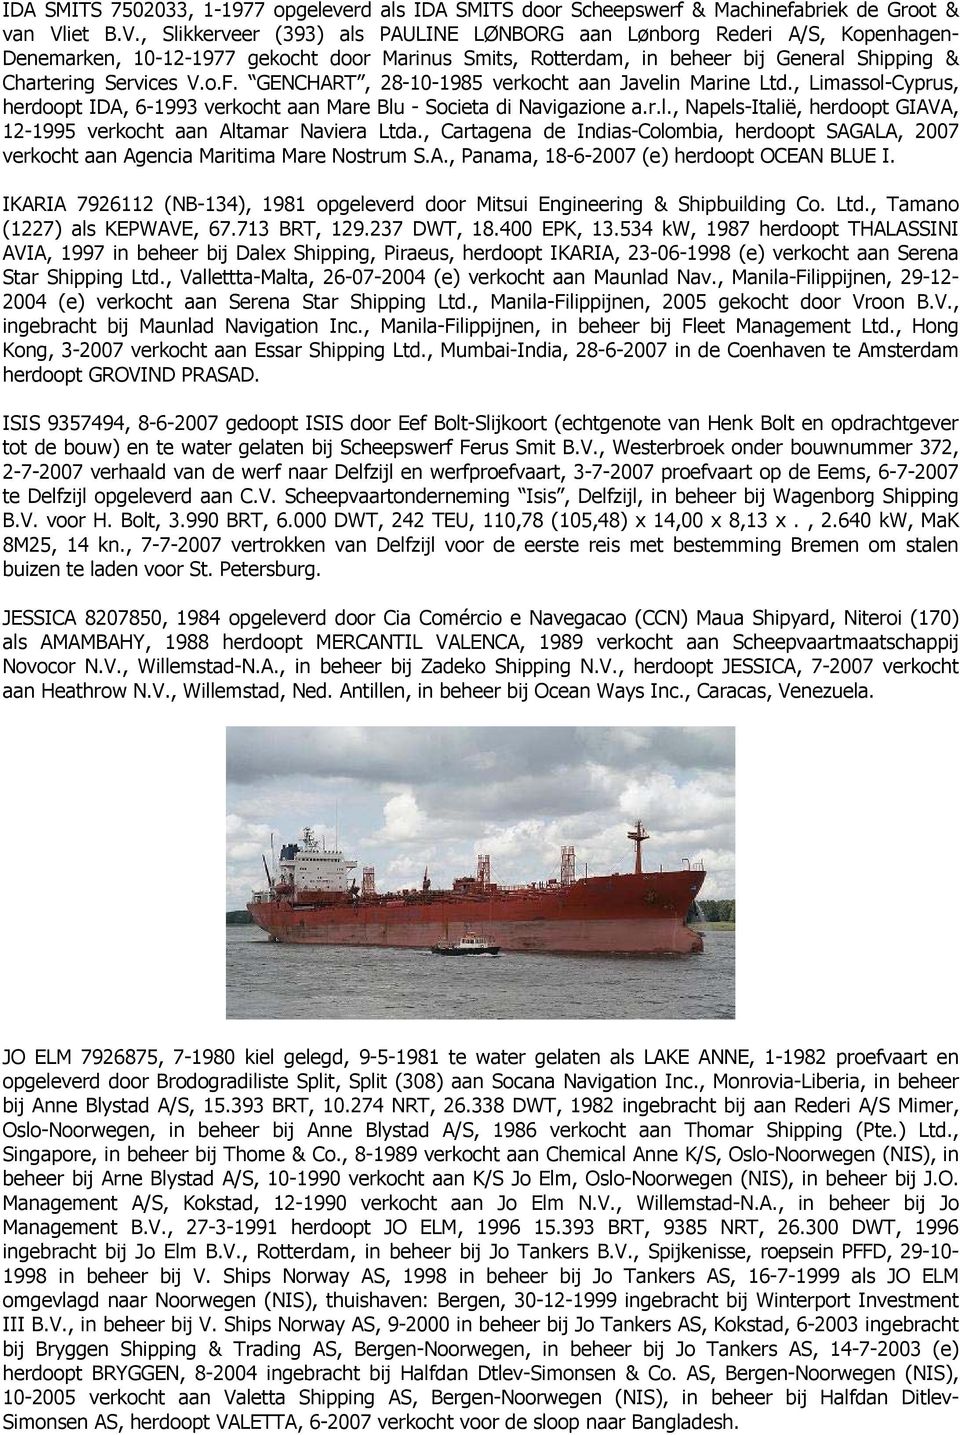 , Slikkerveer (393) als PAULINE LØNBORG aan Lønborg Rederi A/S, Kopenhagen- Denemarken, 10-12-1977 gekocht door Marinus Smits, Rotterdam, in beheer bij General Shipping & Chartering Services V.o.F.